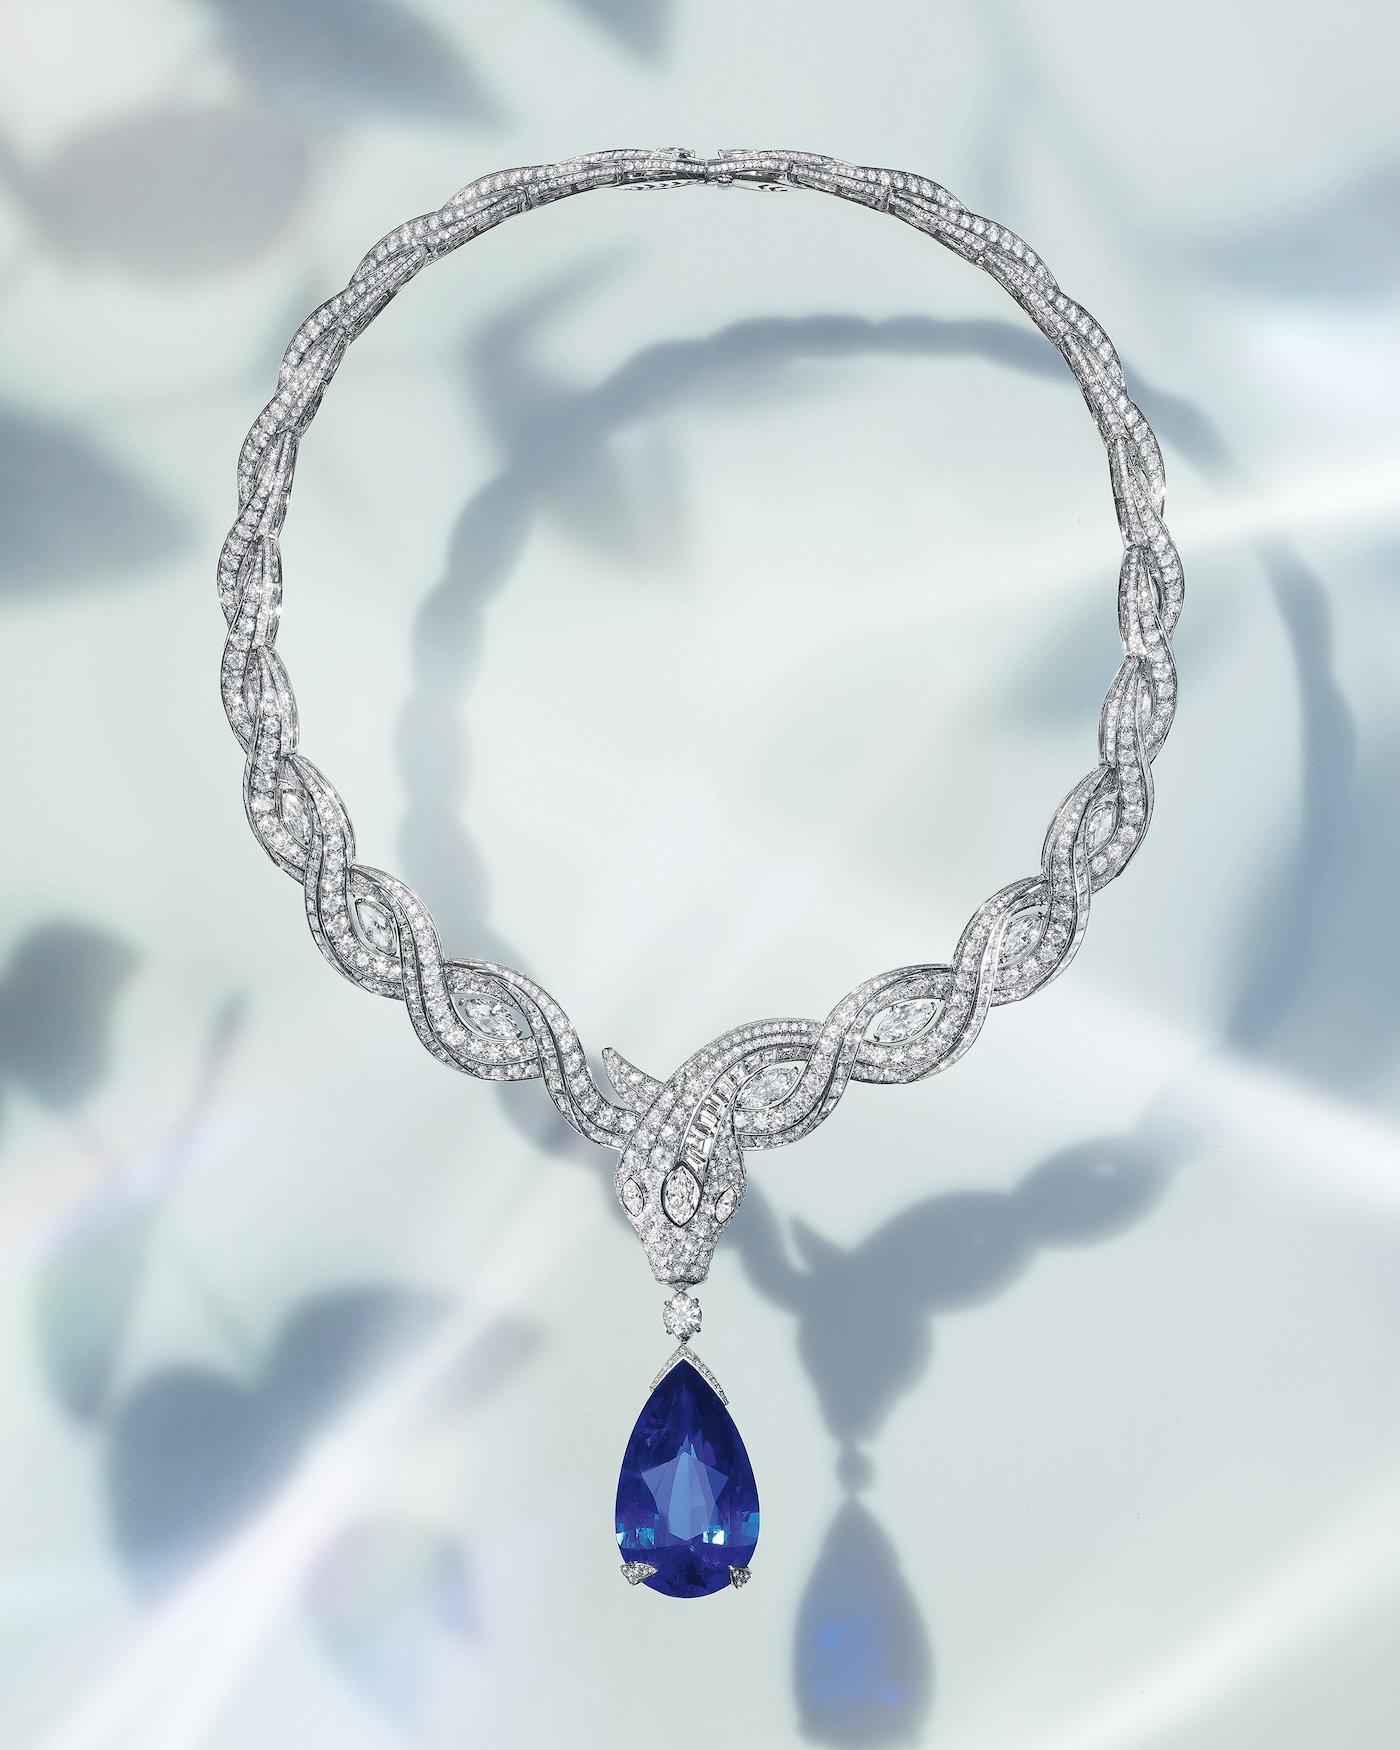 奇迹花园系列Serpenti Ocean Treasure项链，中央宝石为61.30克拉的水滴形斯里兰卡蓝宝石